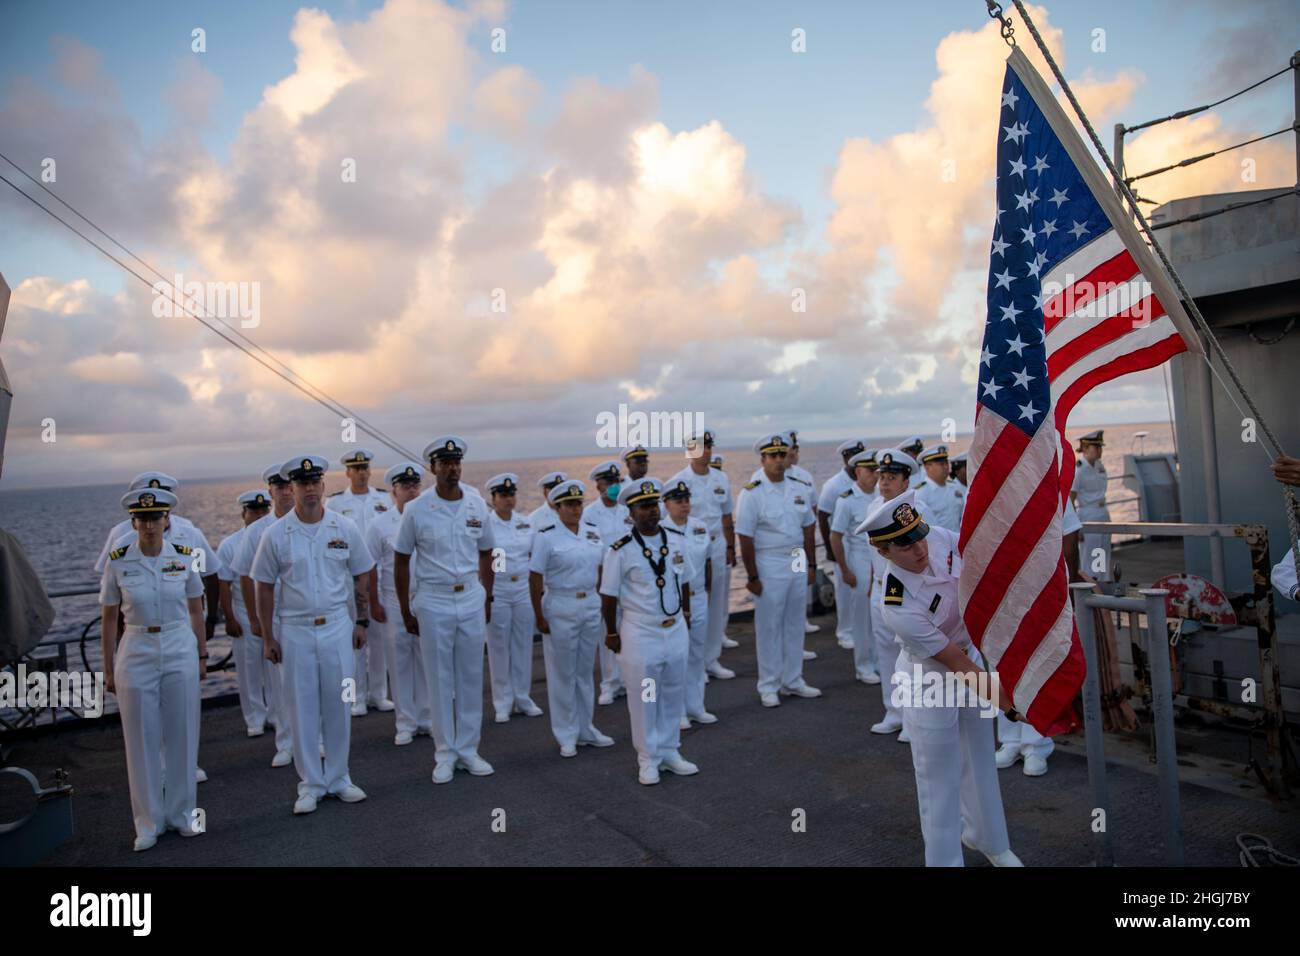 OCÉAN PACIFIQUE (août13, 2021) des marins américains affectés au navire d'atterrissage amphibie USS Pearl Harbor (LSD 52), se tiennent en formation lors d'un service commémoratif en l'honneur du chef électricien, le Mate Stuart Hedley, à bord de Pearl Harbor, août 13.Hedley a servi dans la marine américaine pendant plus de vingt ans et a survécu à l'attaque à Pearl Harbor, Hawaii, le 7 décembre 1941.Des Marines et des marins de l'unité expéditionnaire maritime (UMM) de 11th et du Essex Amphiobie Ready Group (ARG) mènent actuellement des opérations de routine. Banque D'Images